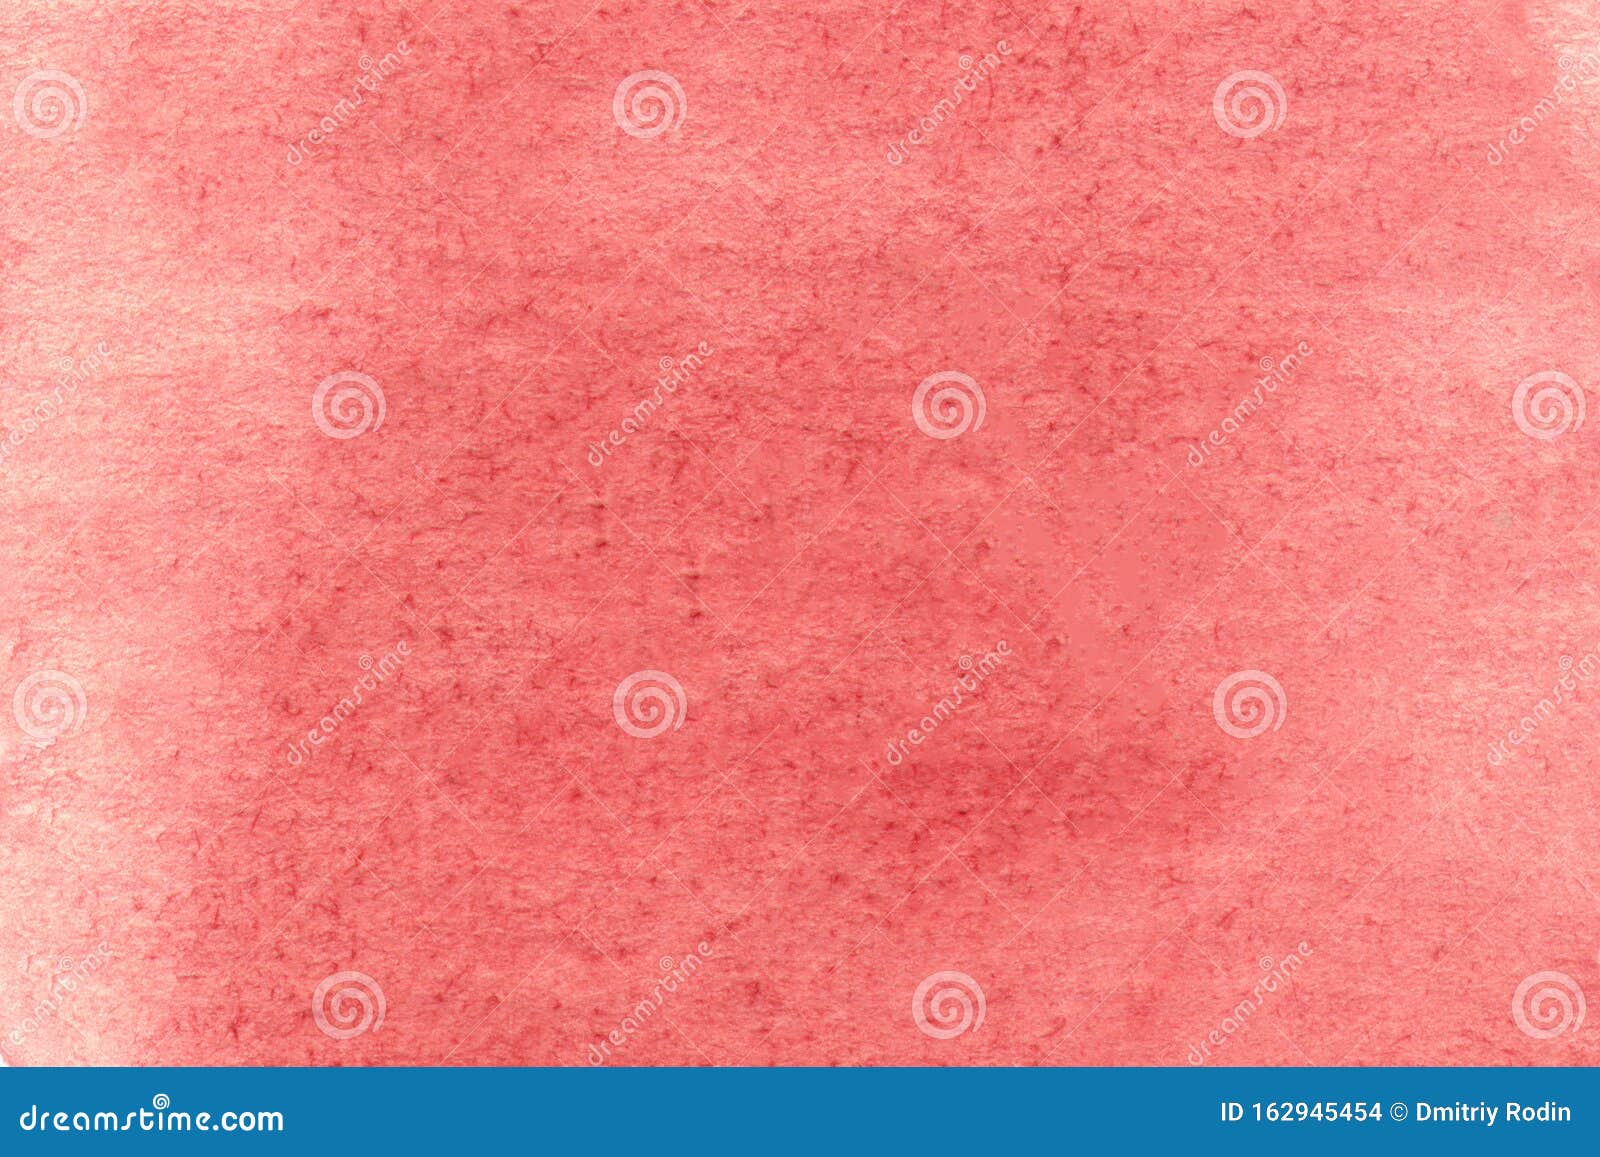 高分辨率红色海报纸红色水彩纹理上的抽象手壁纸的水色纹理库存例证 插画包括有壁纸的水色纹理 纸红色水彩纹理上的抽象手